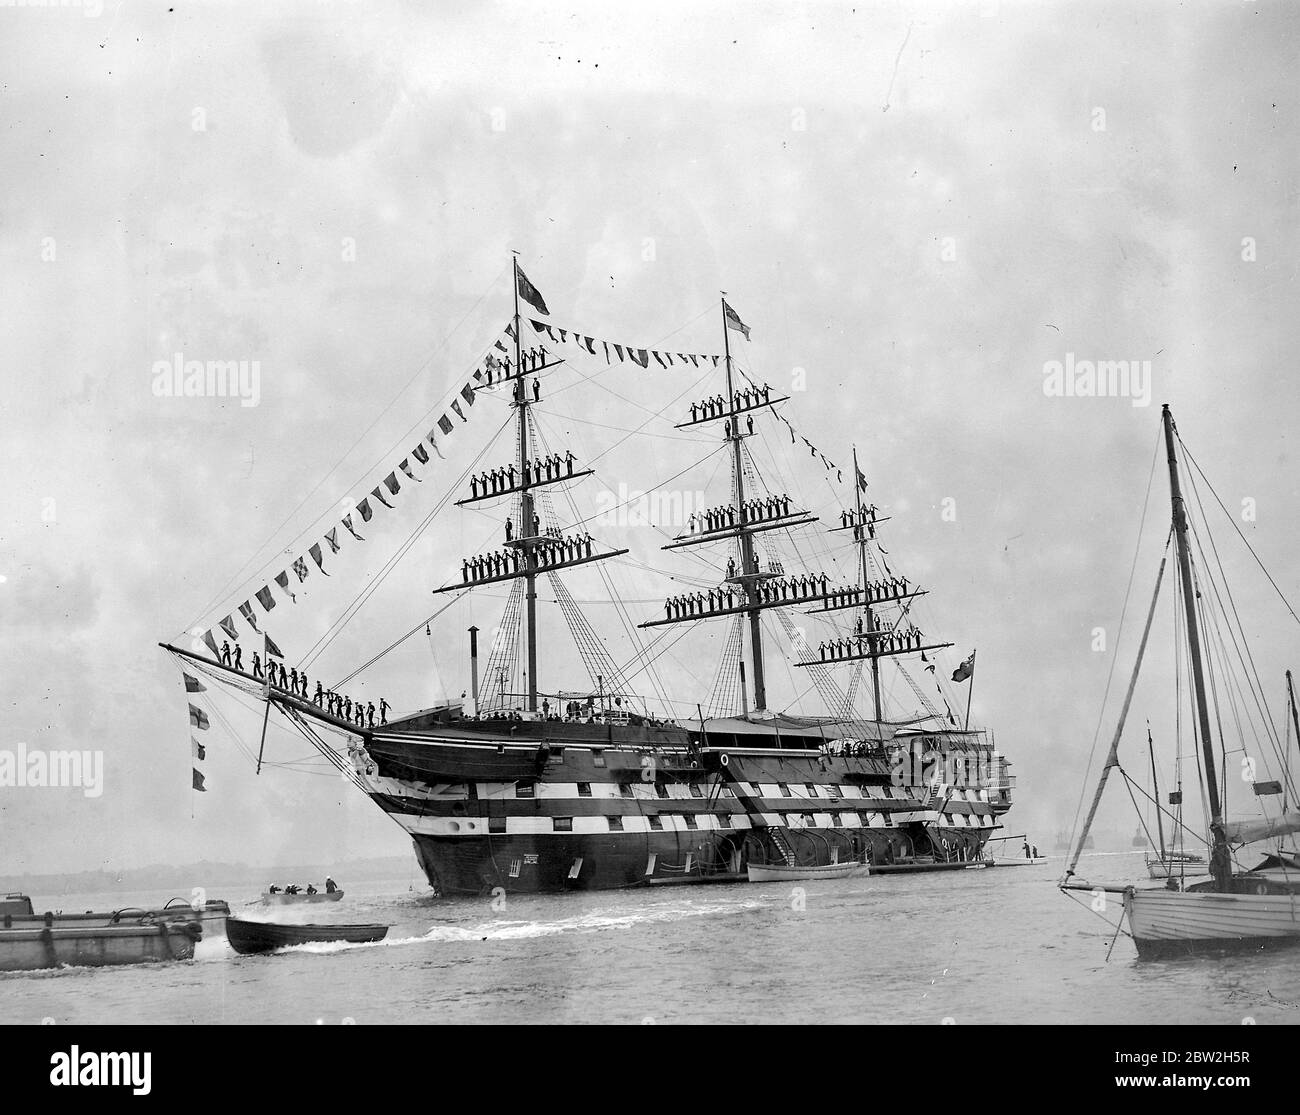 Preistag auf H.M.S. Worcester in Greenhithe, Kent. Kadetten, die das Schiff anrichten. Stehen auf Masten und Rigging. 31 Juli 1936 Stockfoto